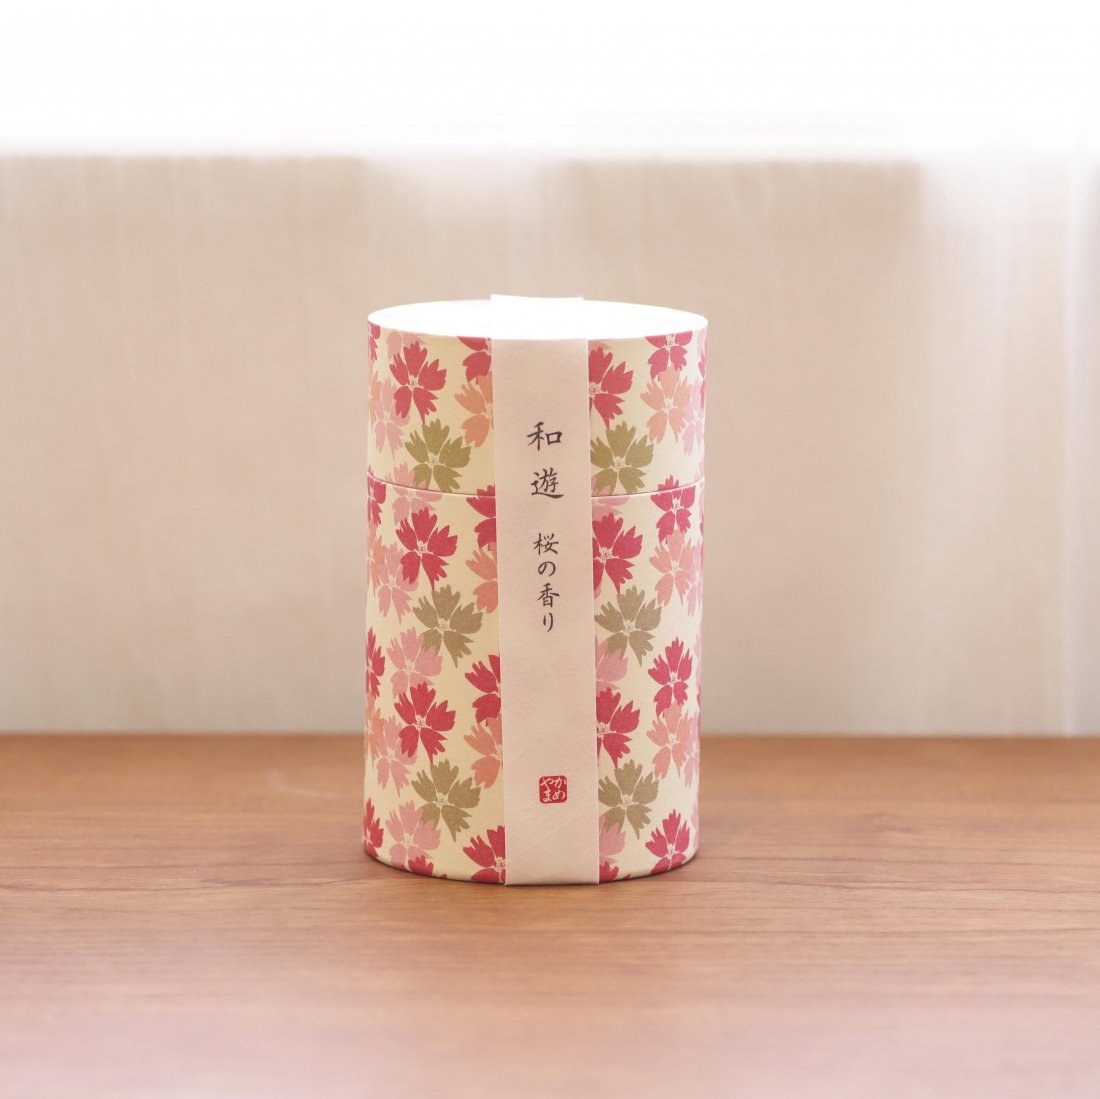 【カメヤマ】和遊 -筒箱- 桜の香り